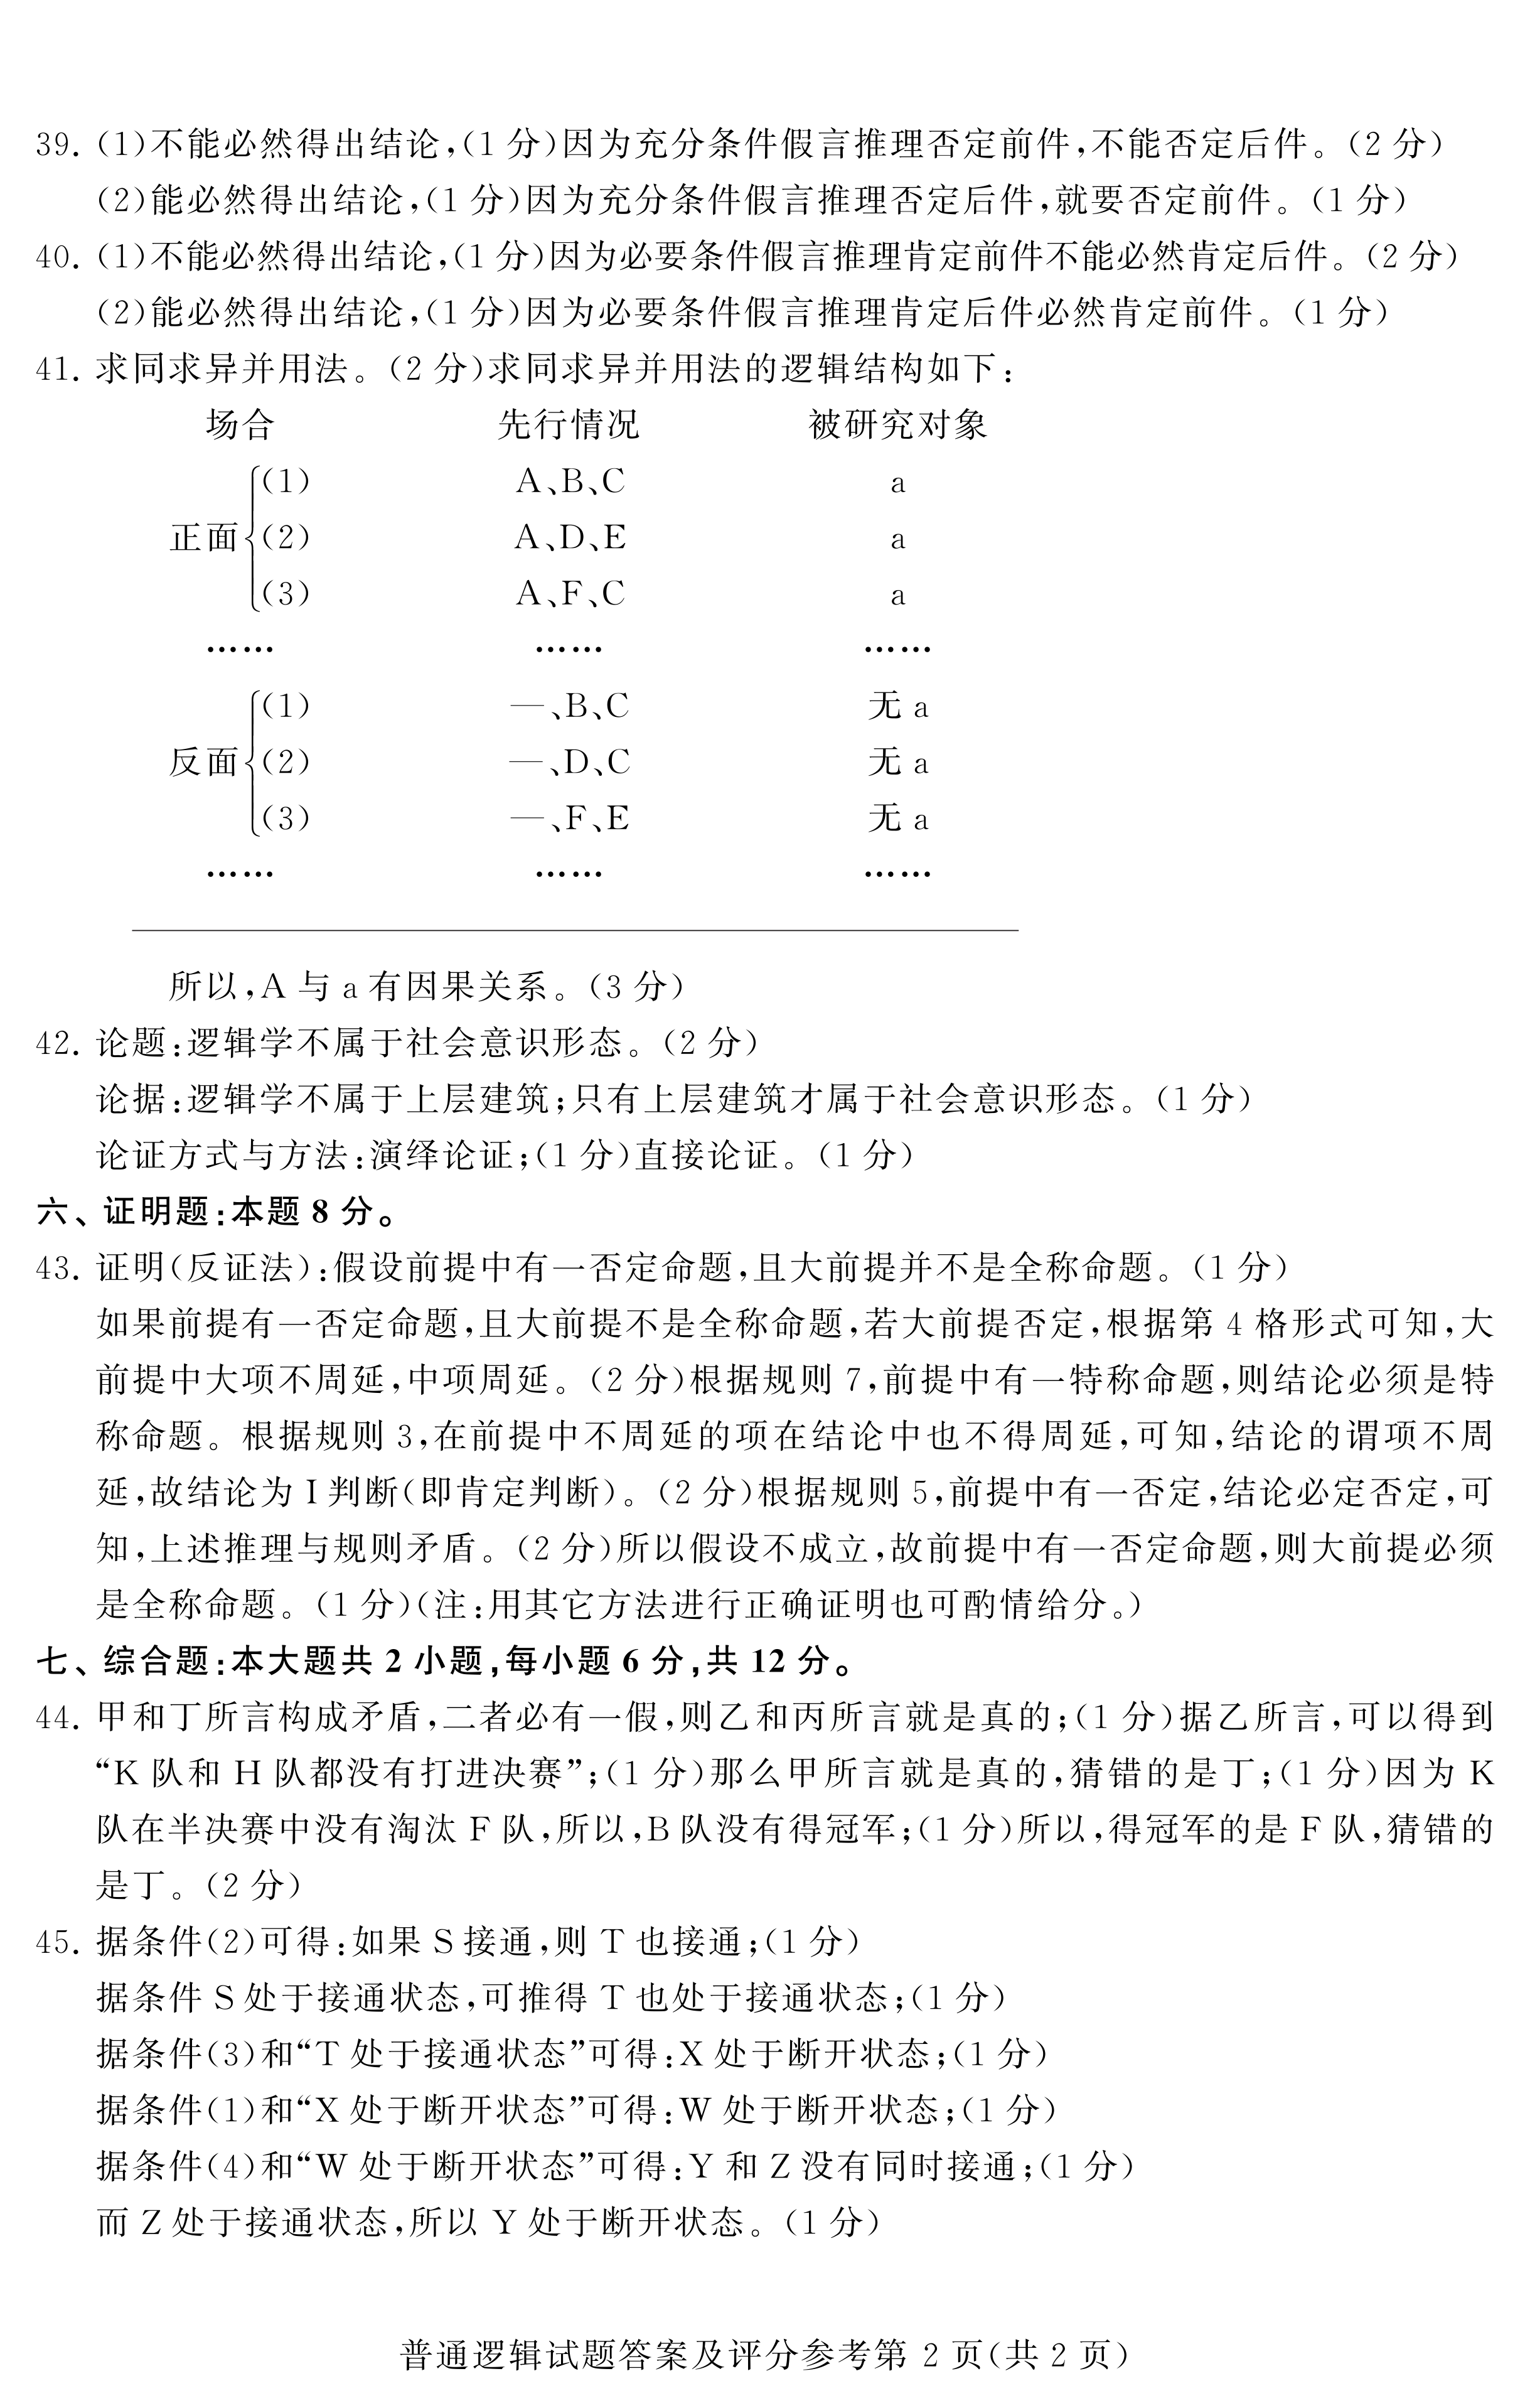 2020年08月贵州省自考00024普通逻辑